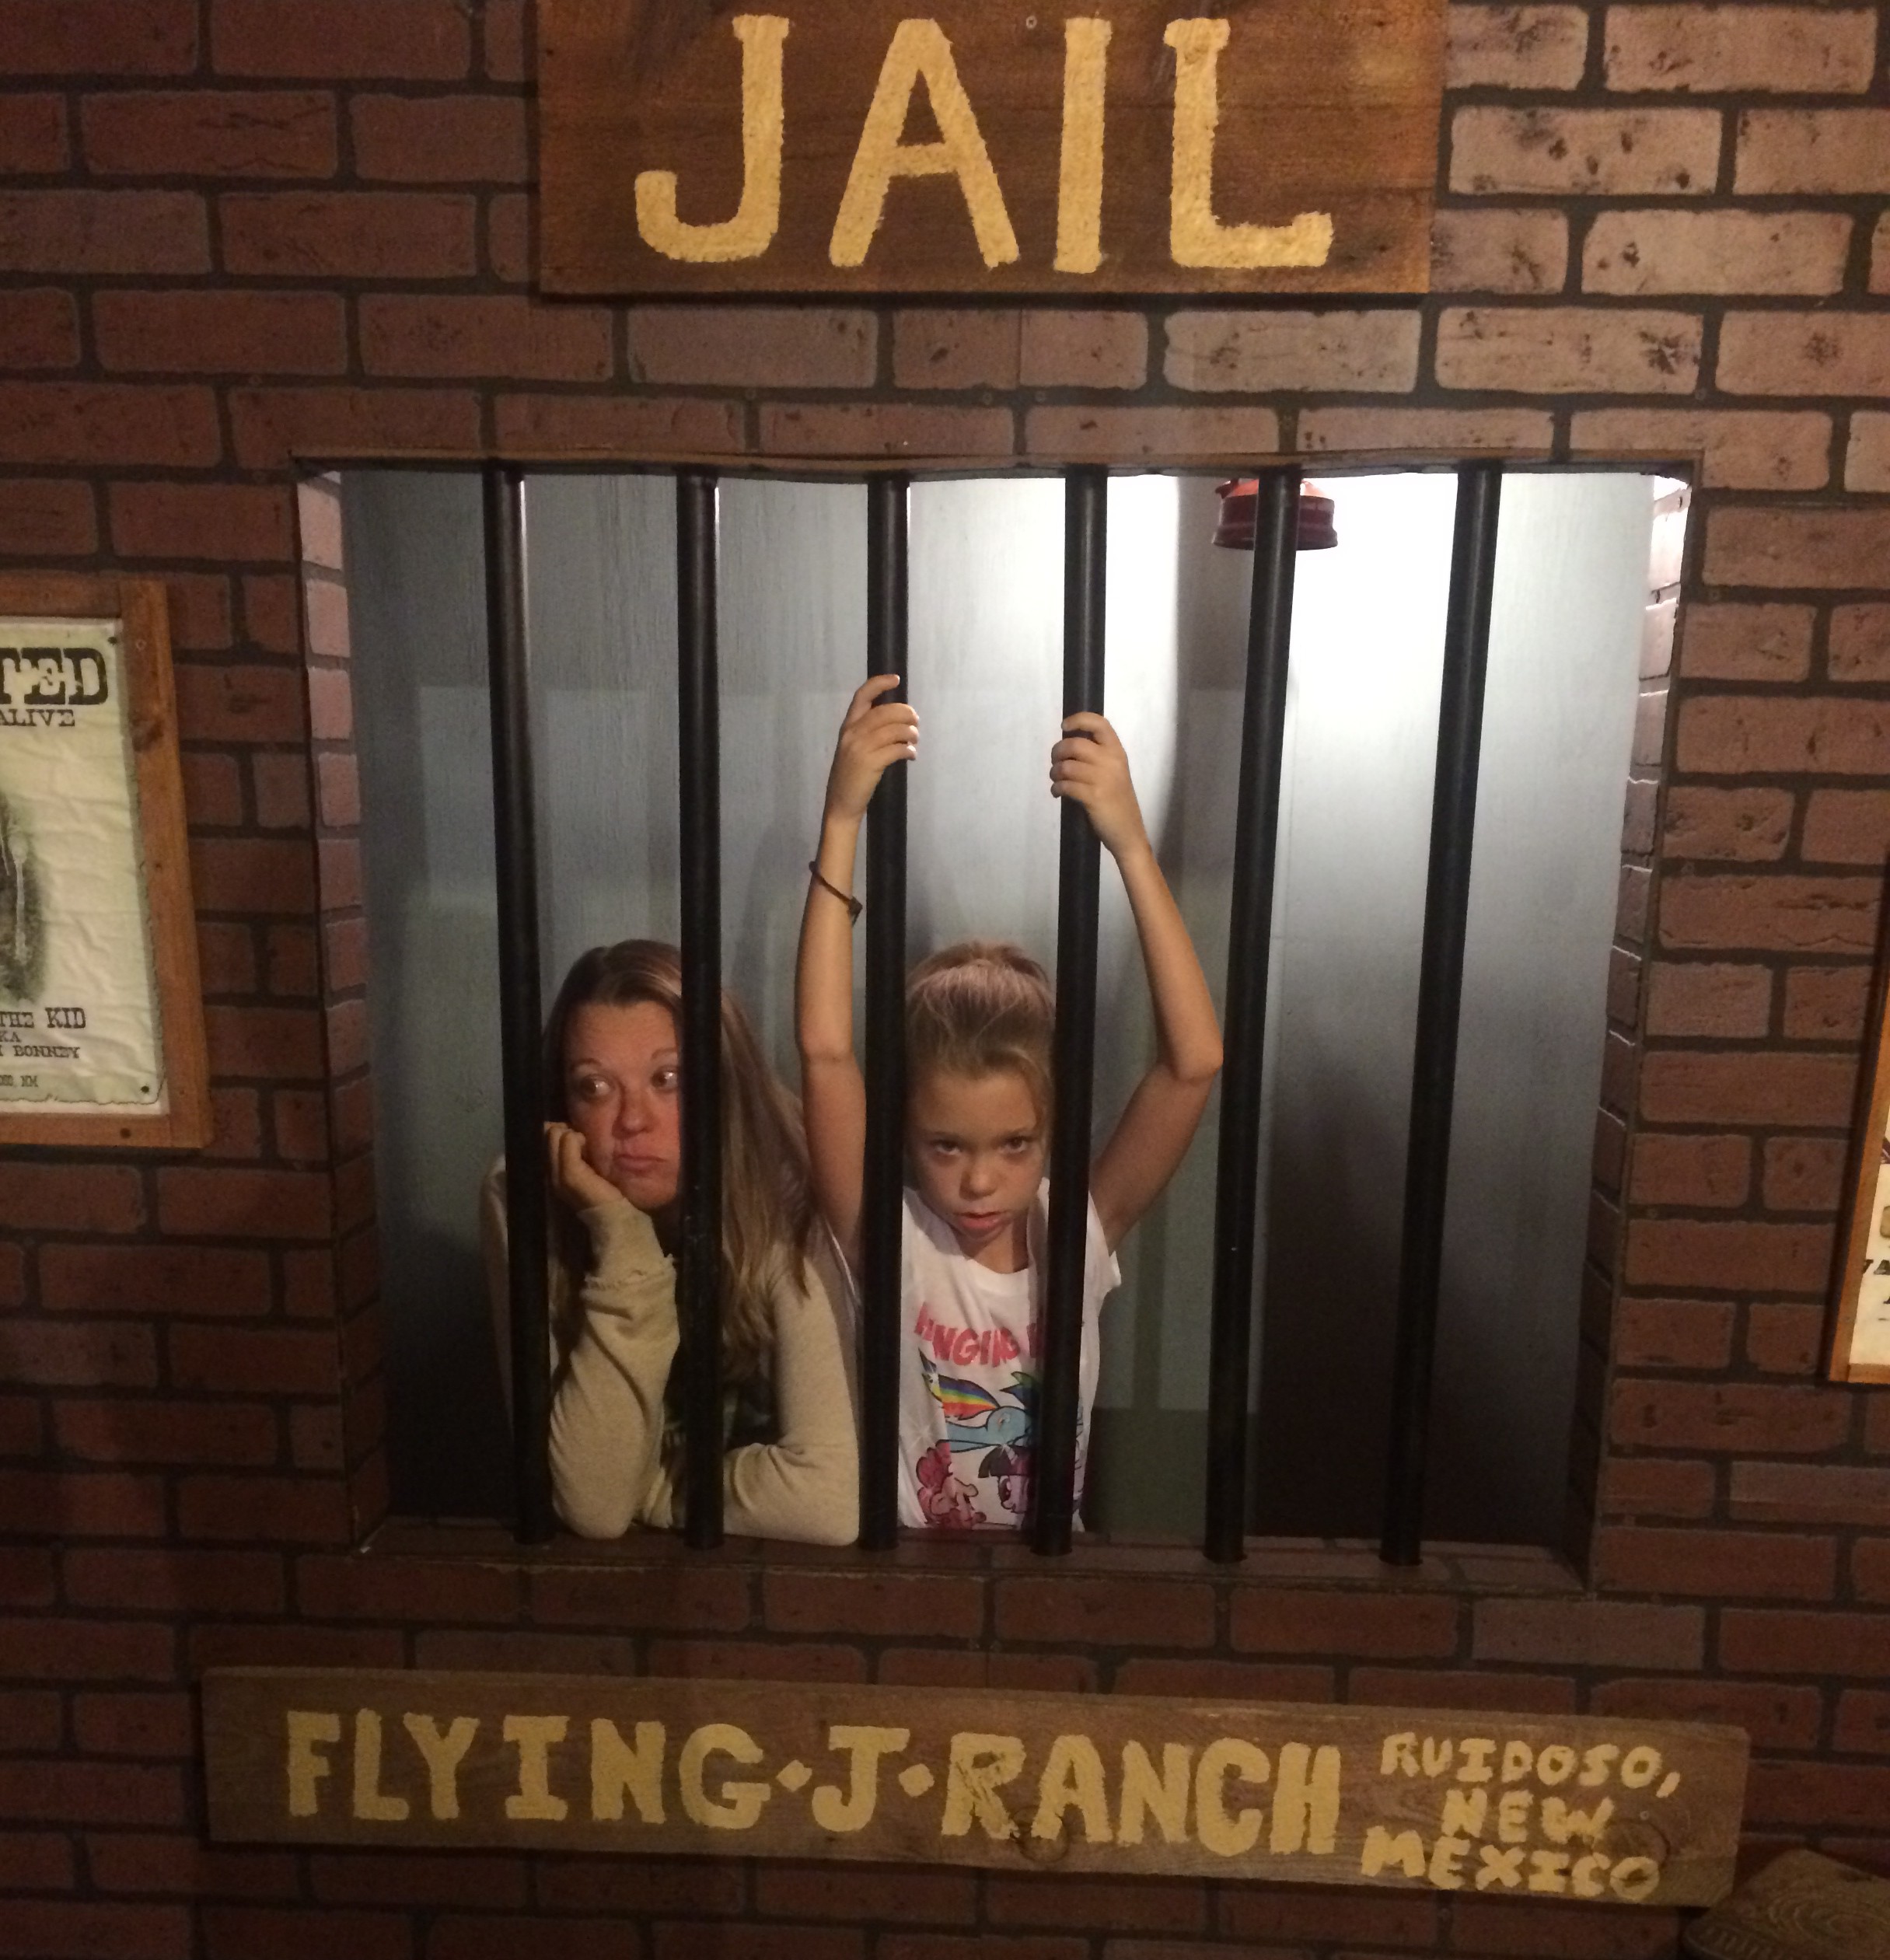 Flying J Jail